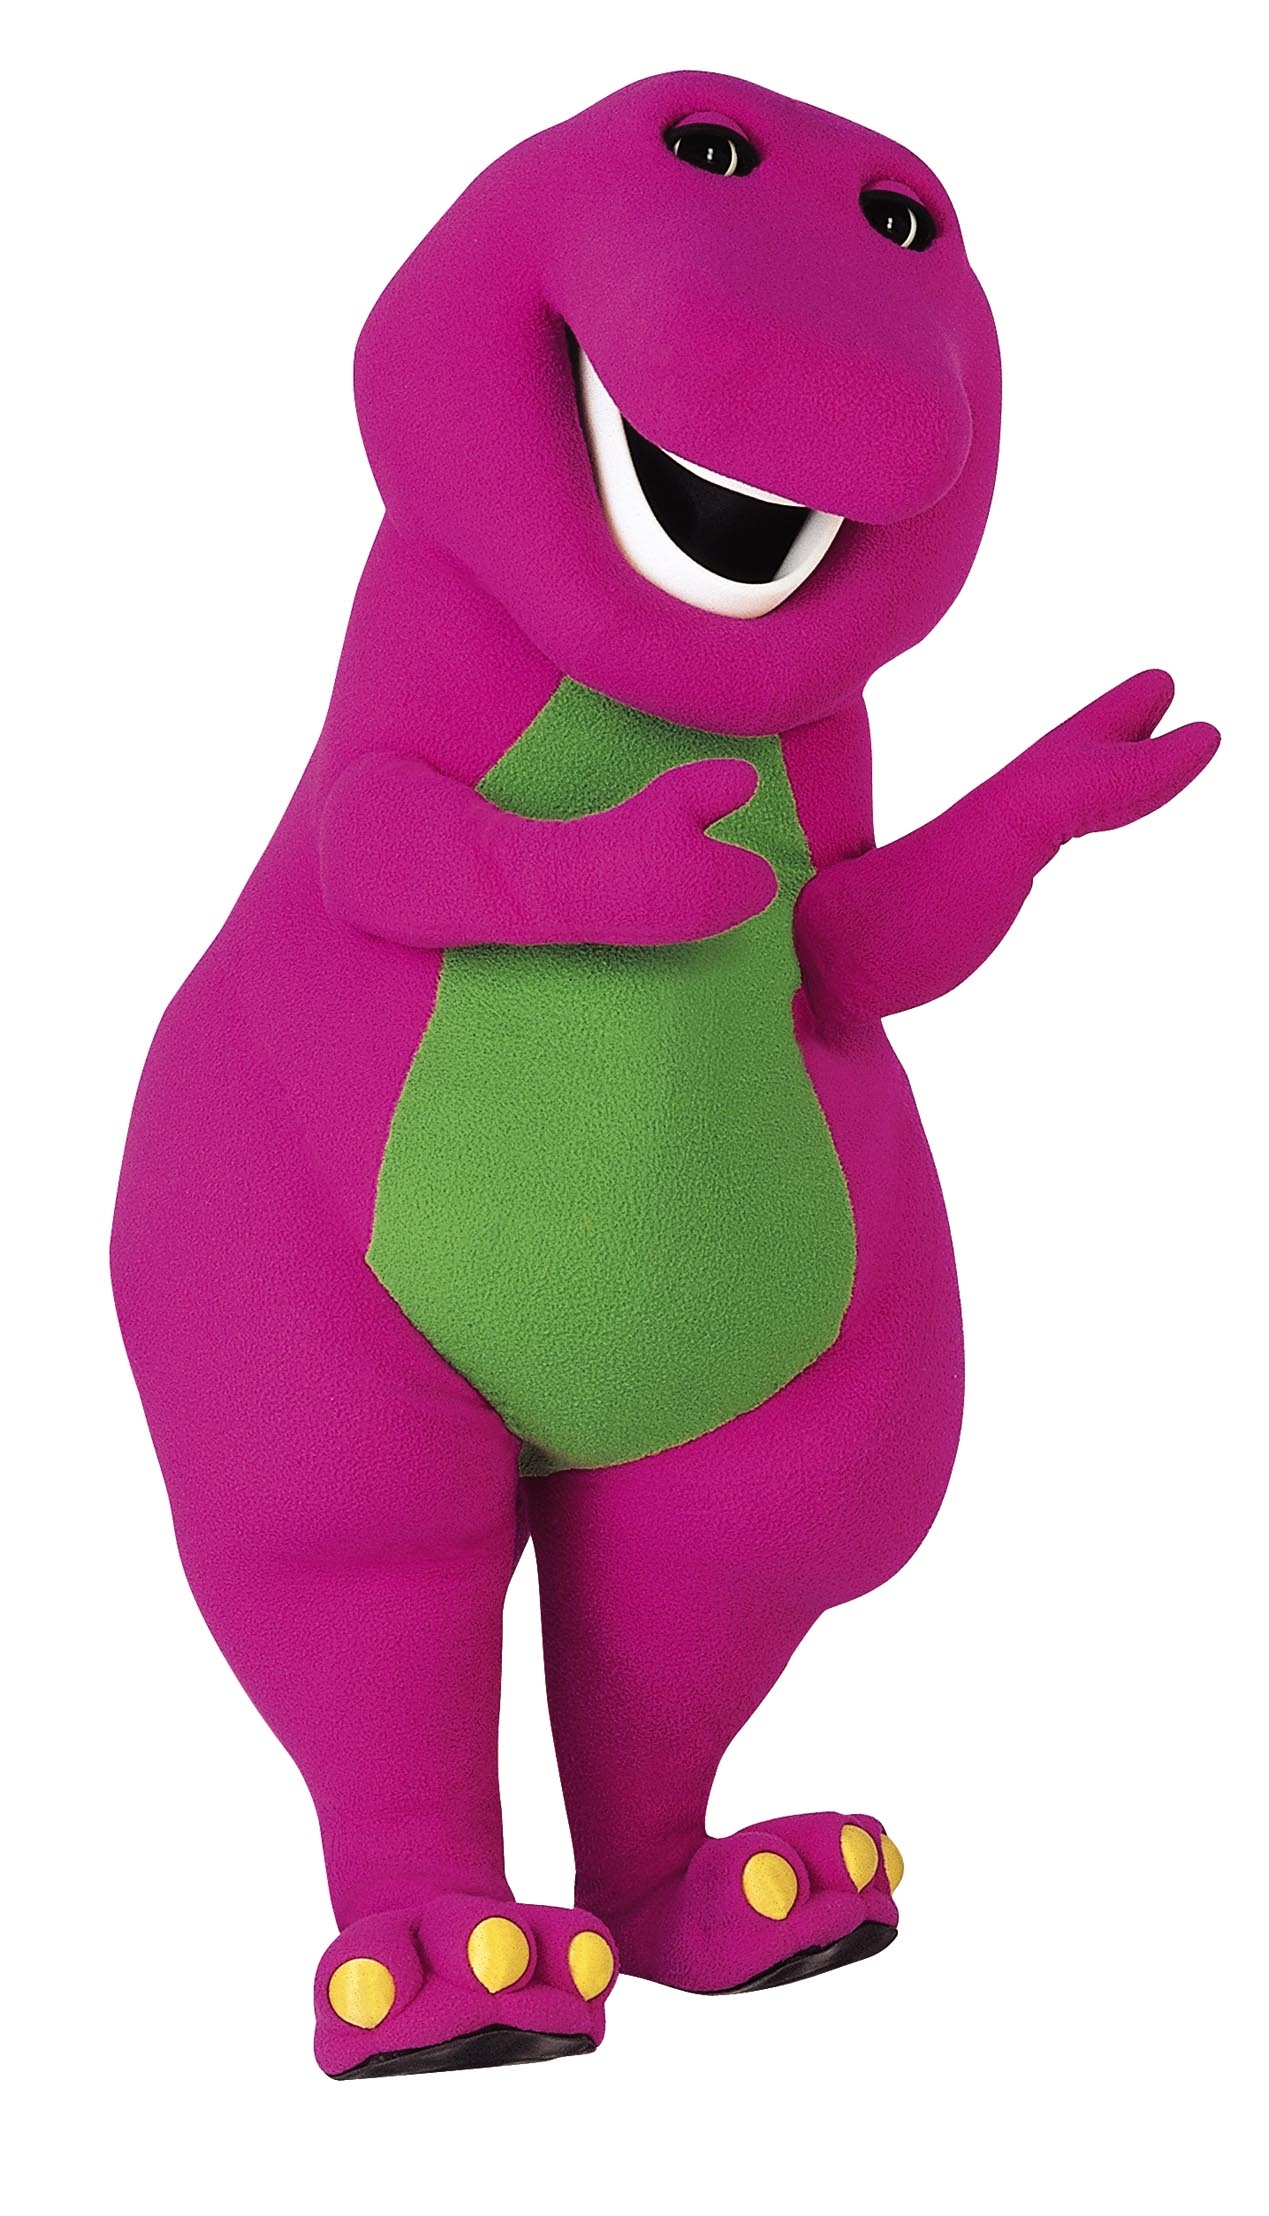 Barney the Dinosaur as a hero